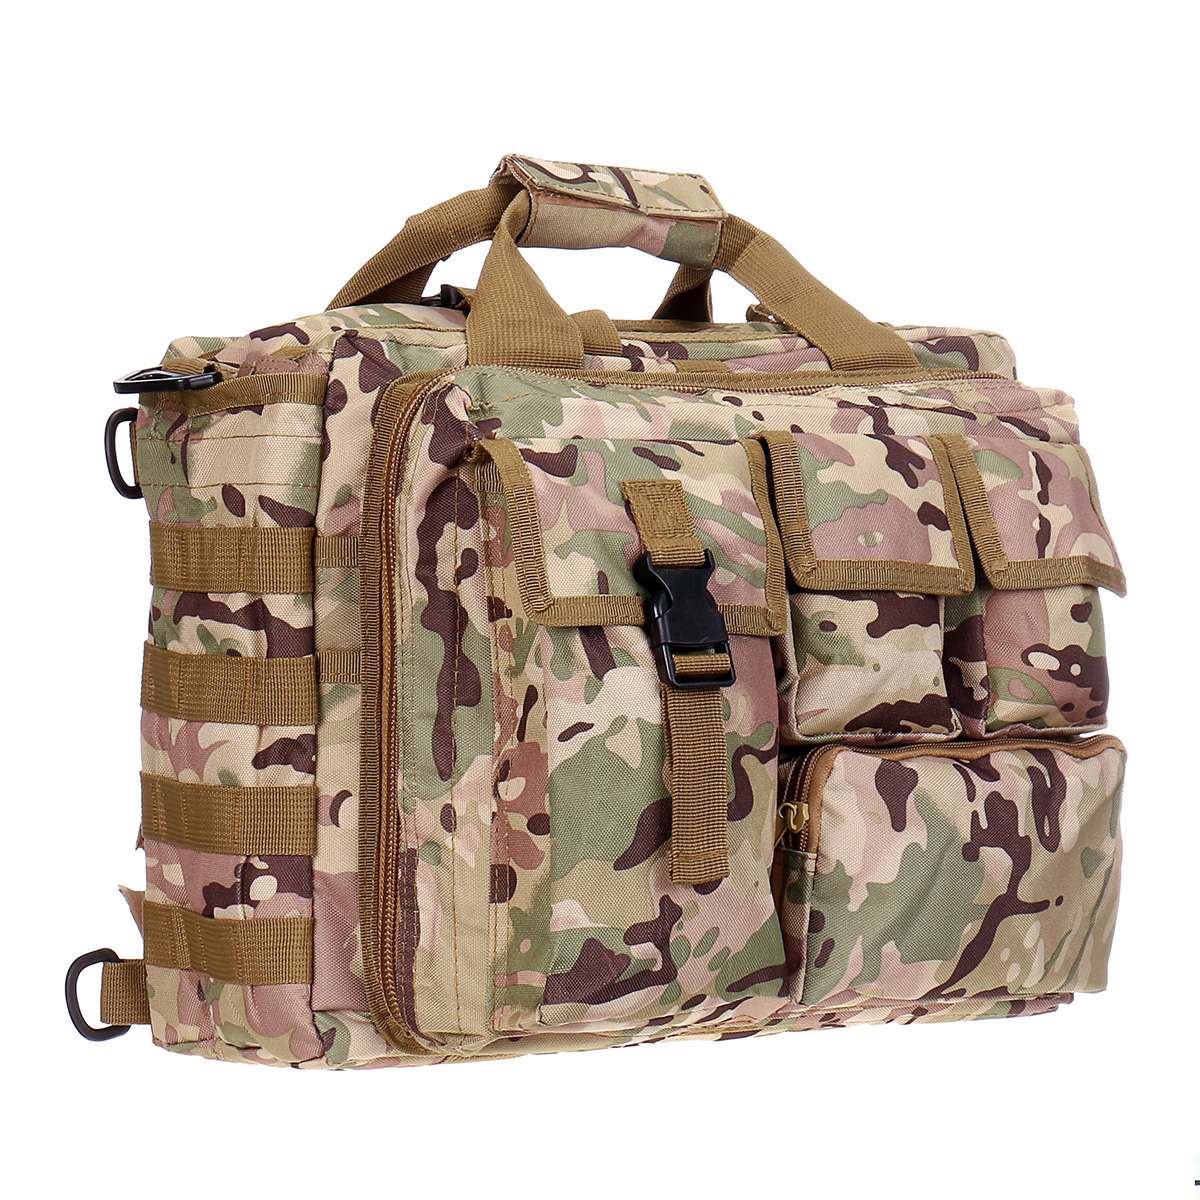 Tactical Shoulder Laptop Bag